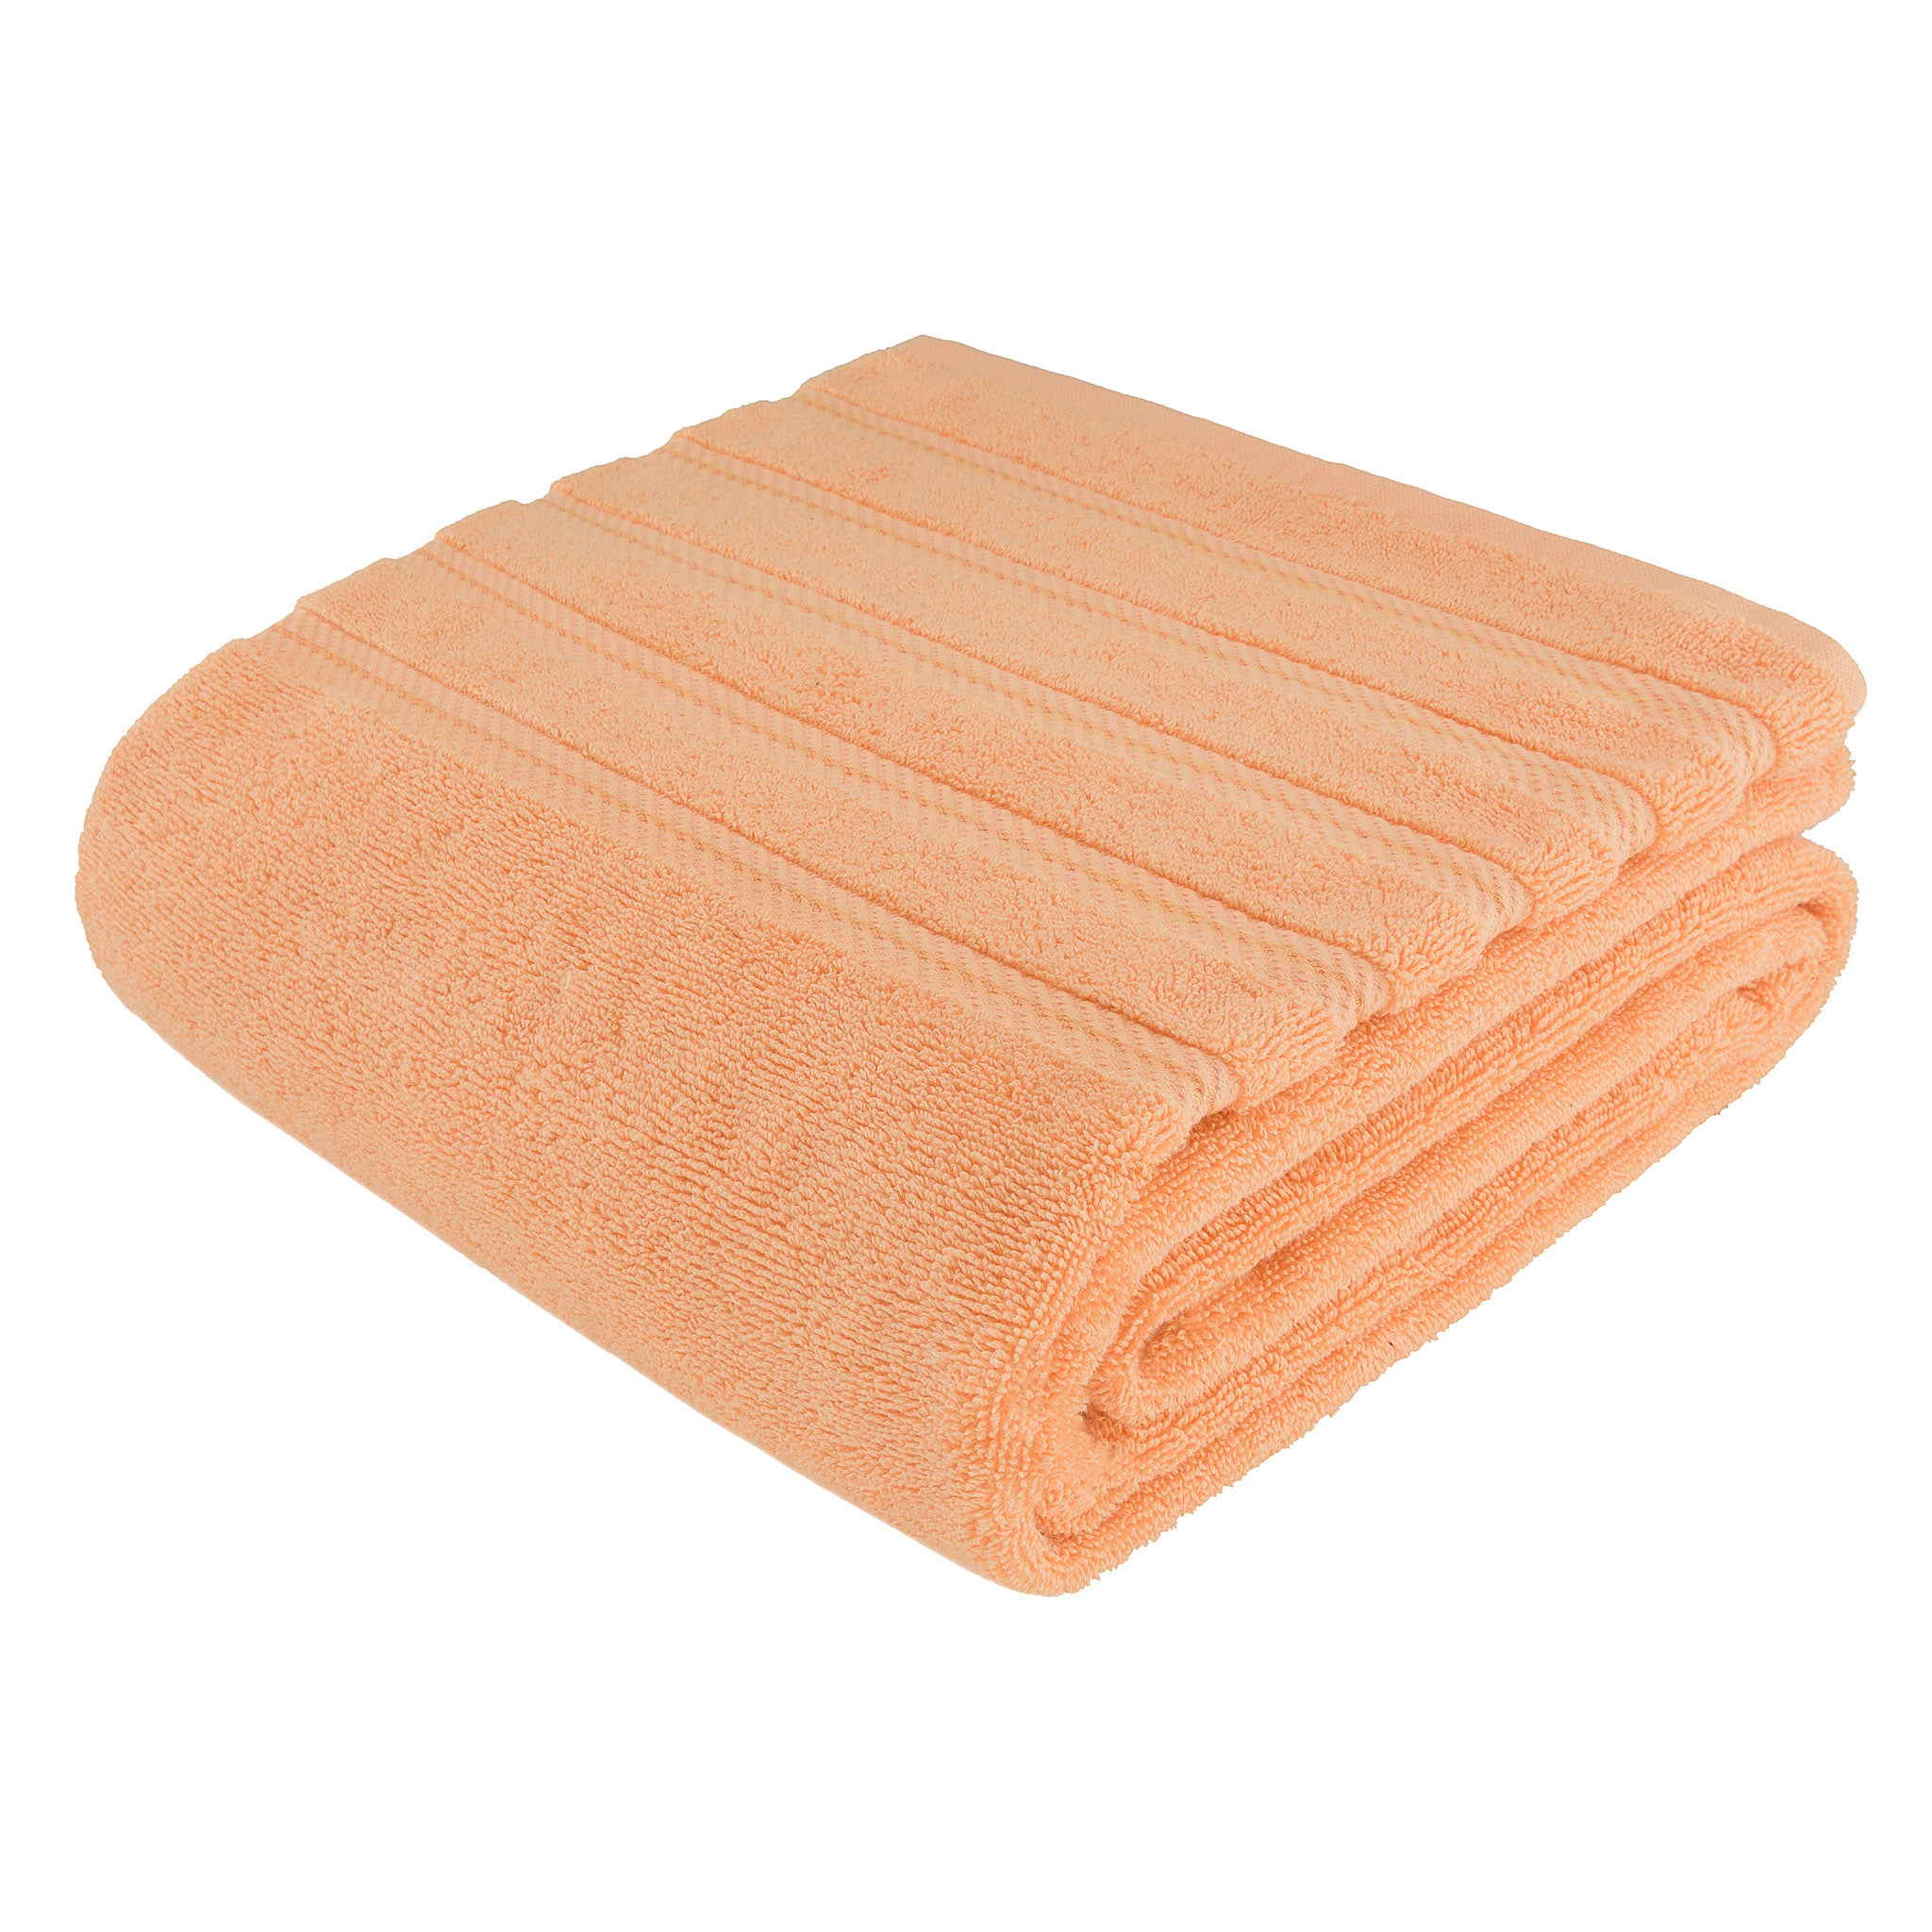 Big Jumbo Bath Towel 100% Pure Cotton Large 36X70in Bathroom Towels Warm  Towel